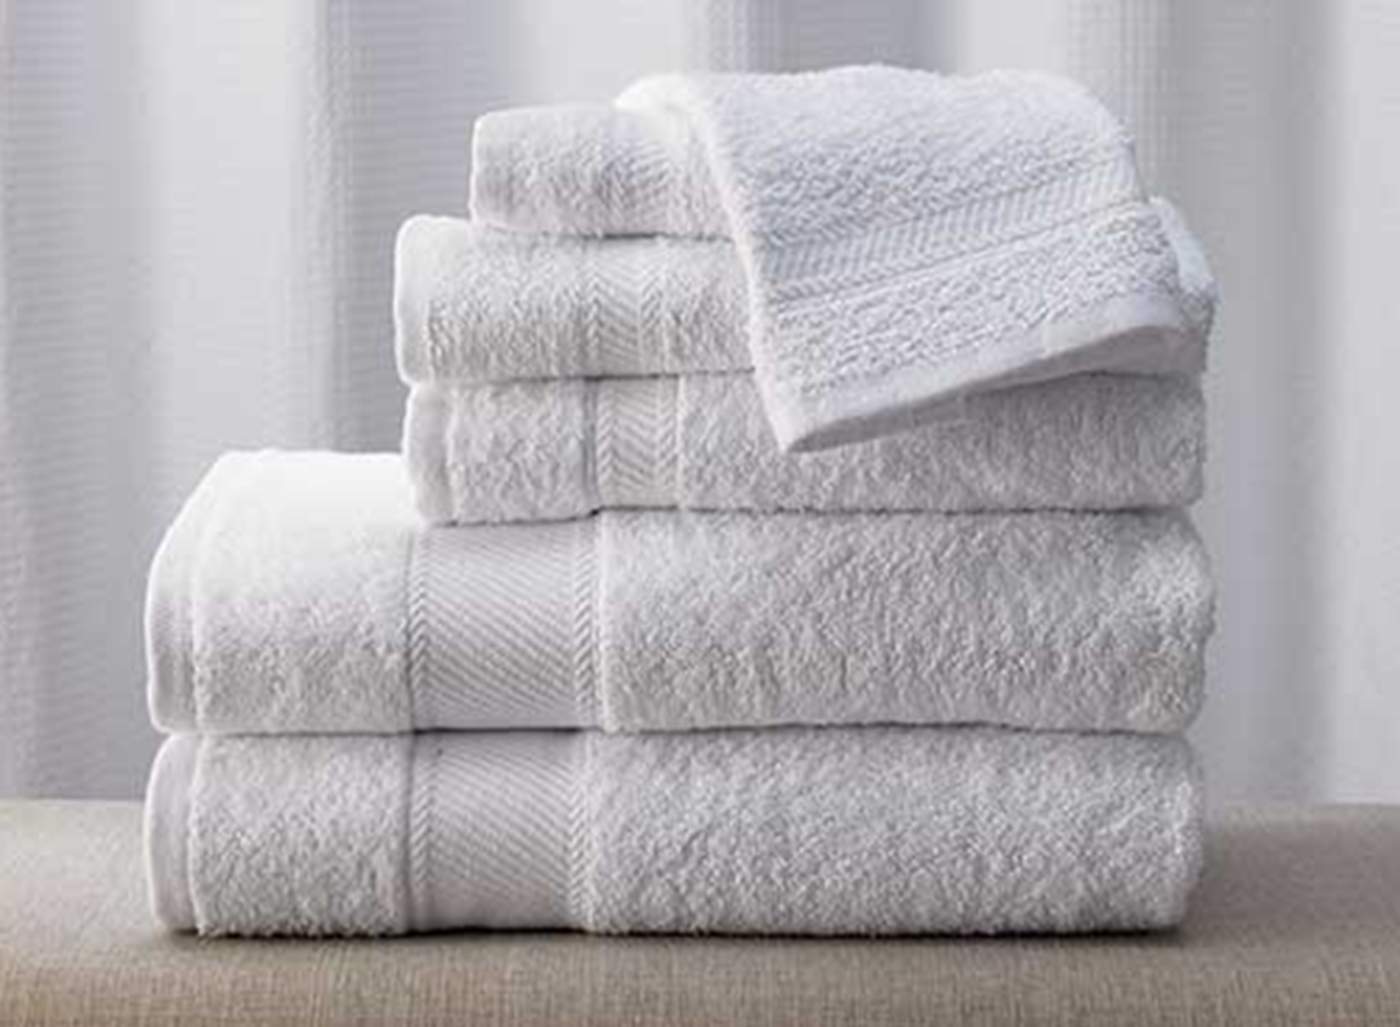 ¿Cuántas toallas debe tener una persona?